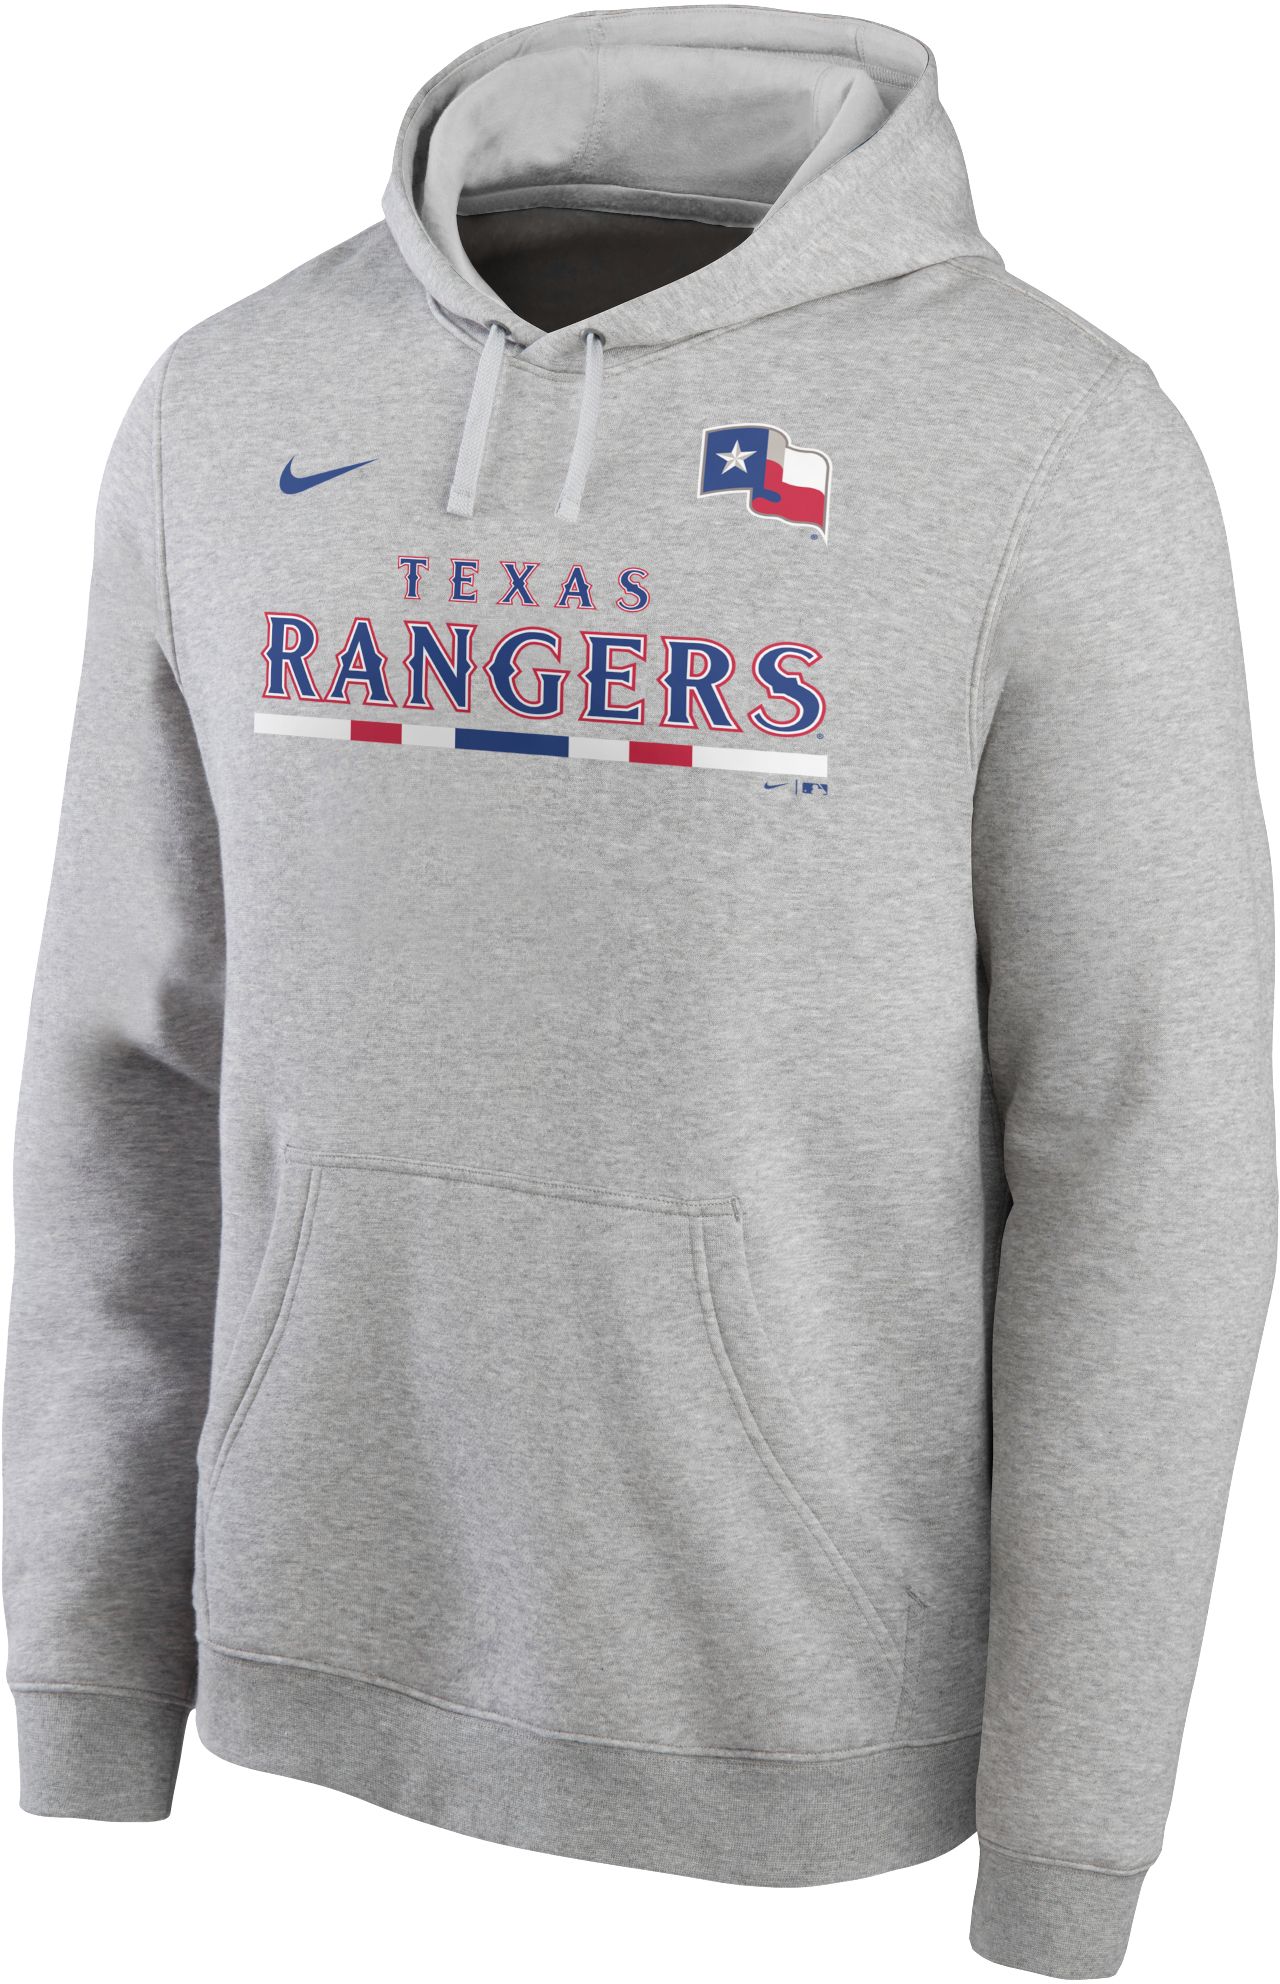 rangers hoodie